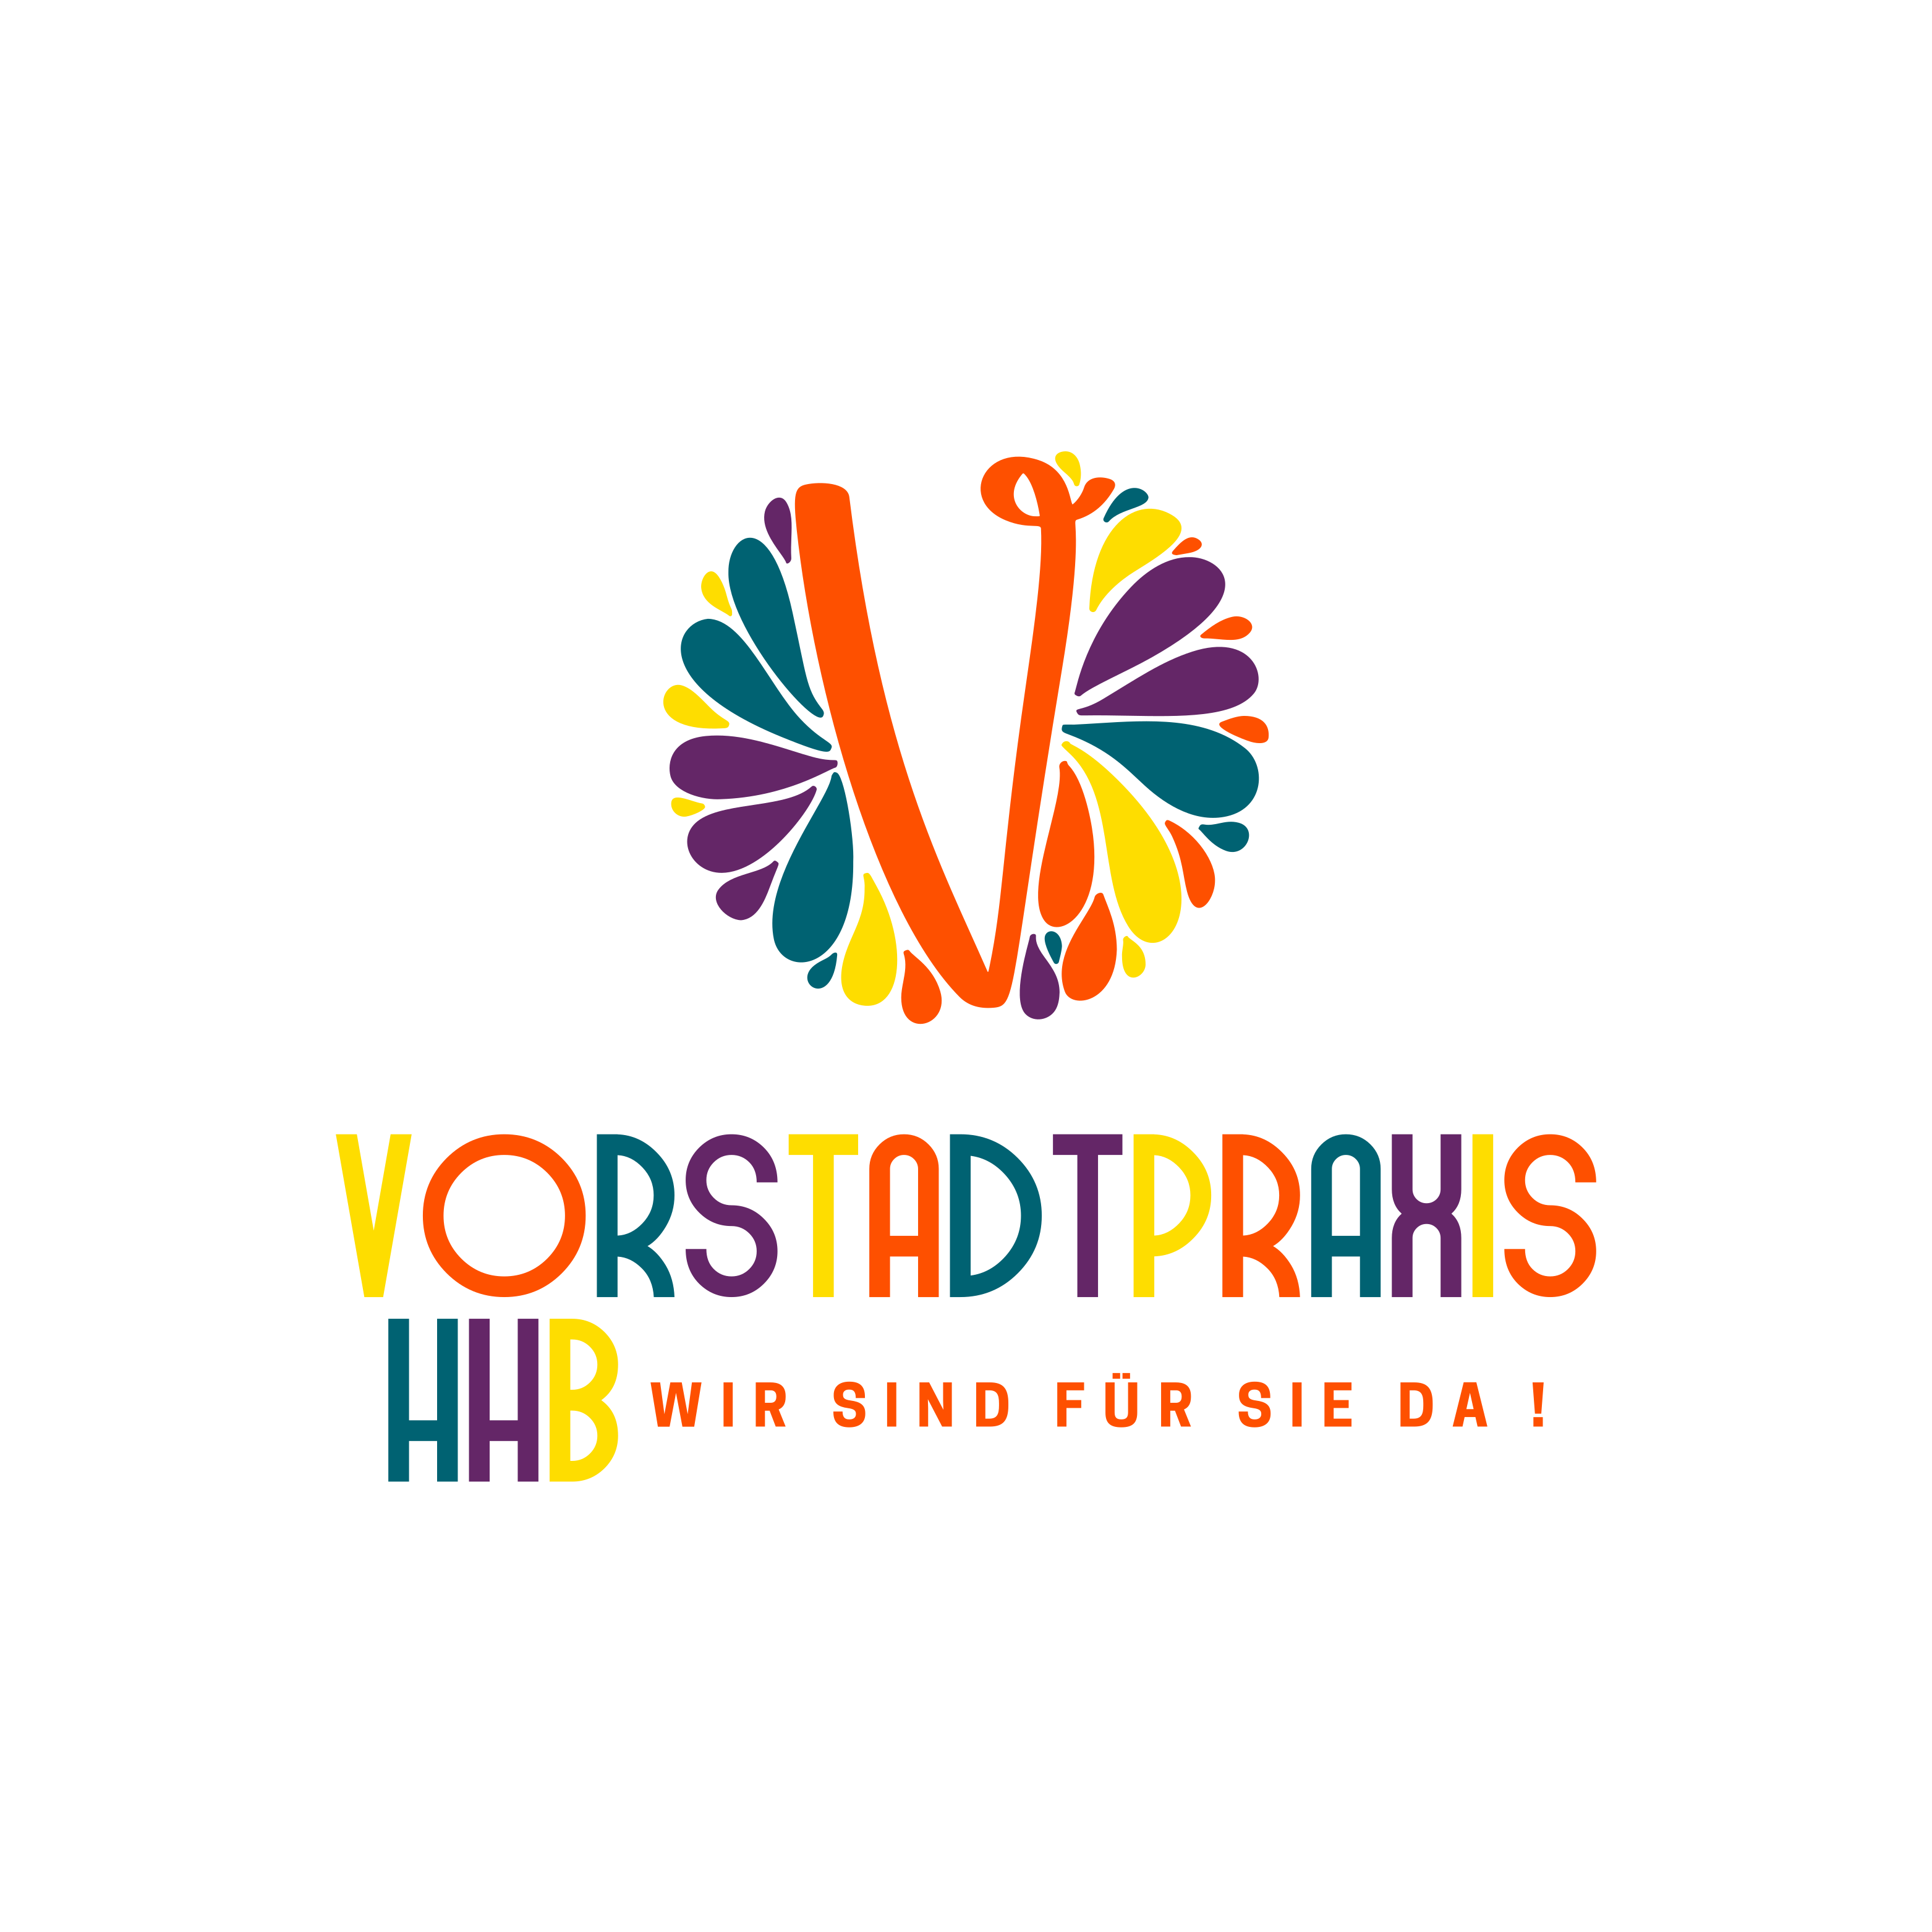 Vorstadt Praxis Logo